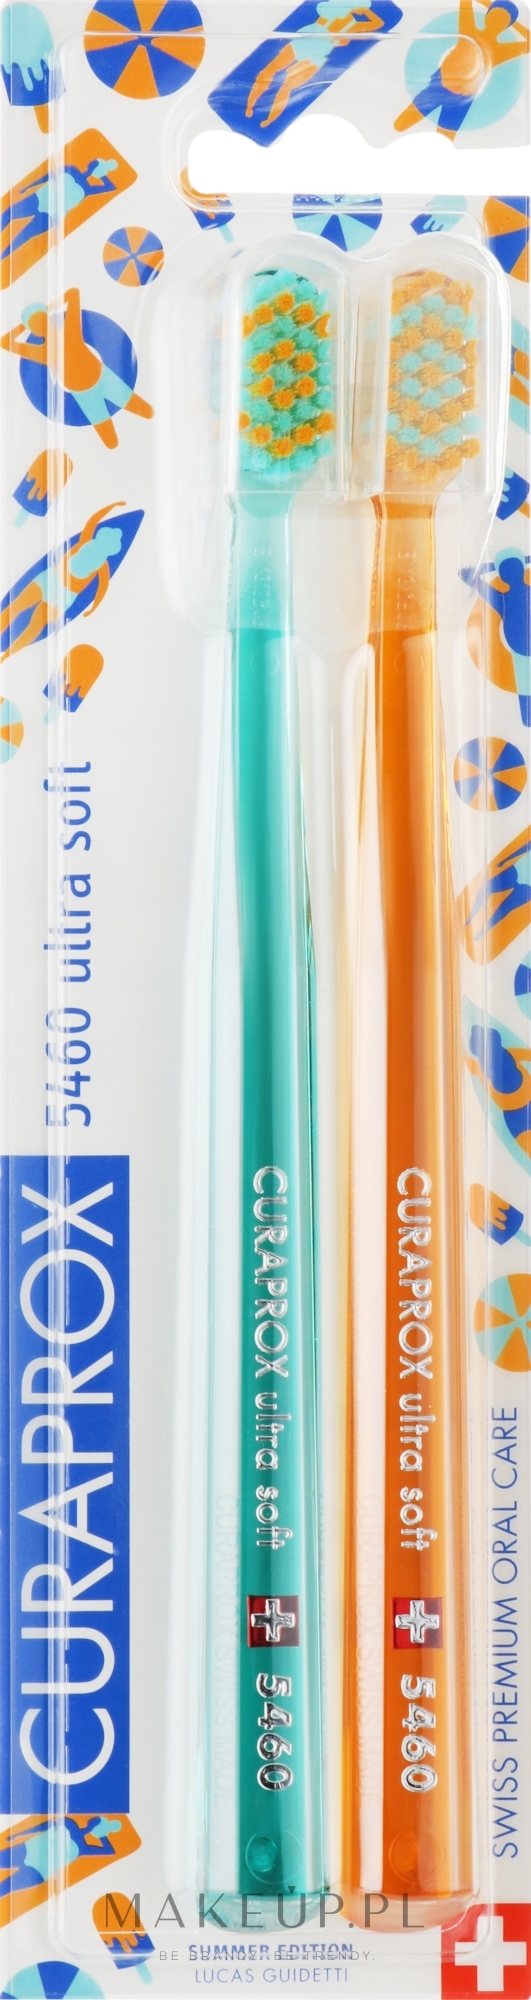 Zestaw szczoteczek do zębów Summer Edition, 5460 Ultra Soft, 2 szt, niebieska + żółta - Curaprox — Zdjęcie 2 szt.